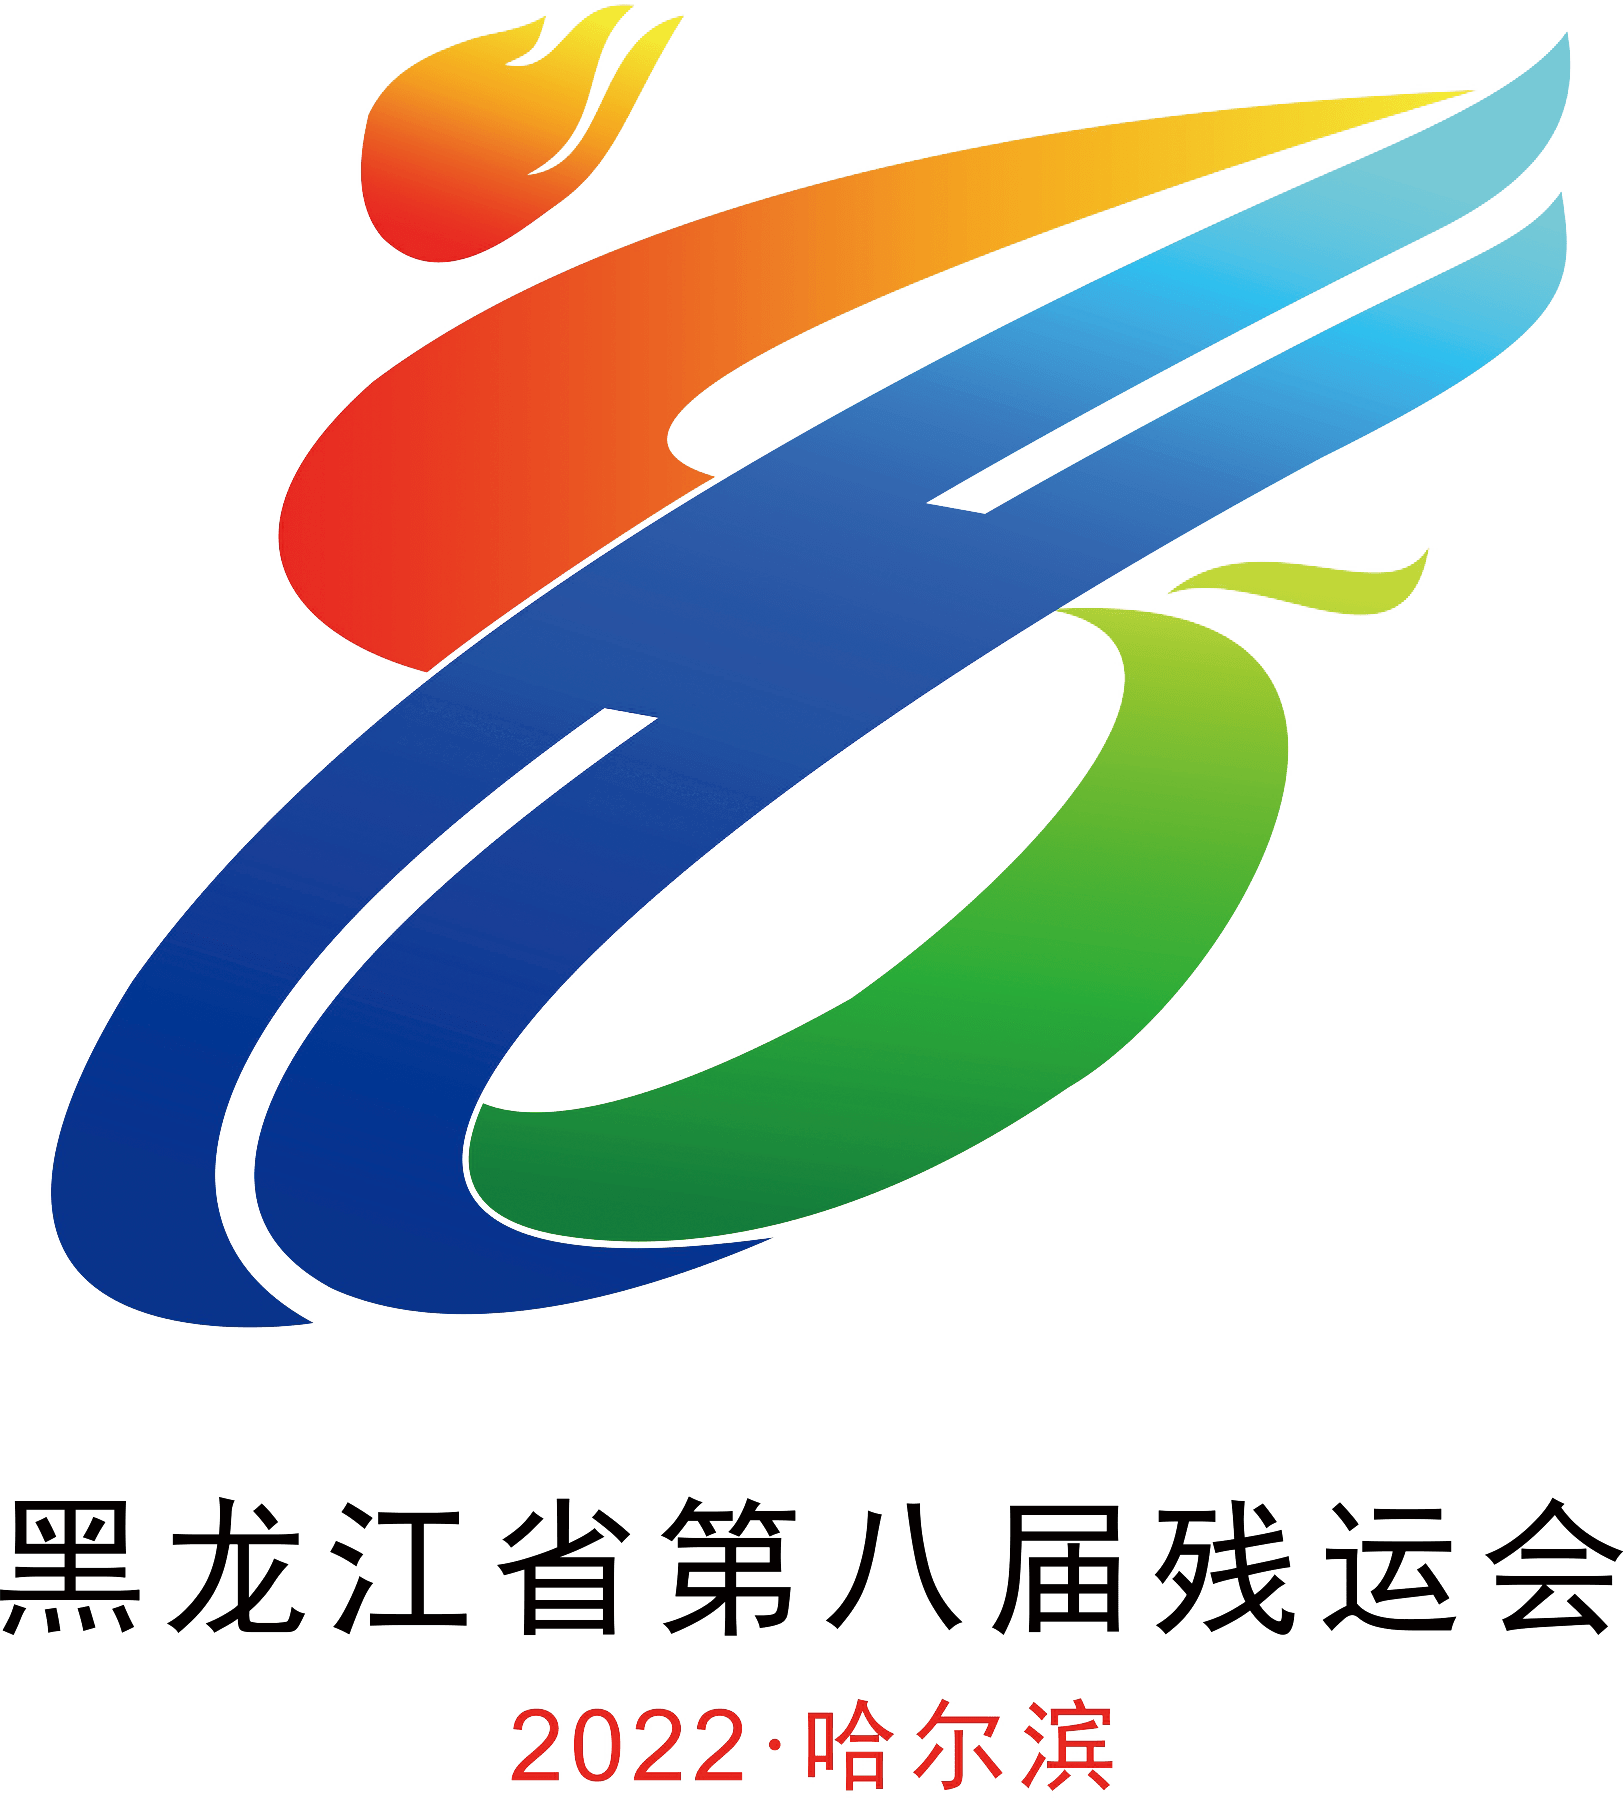 黑龙江省第八届残疾人运动会会徽,吉祥物,主题口号发布